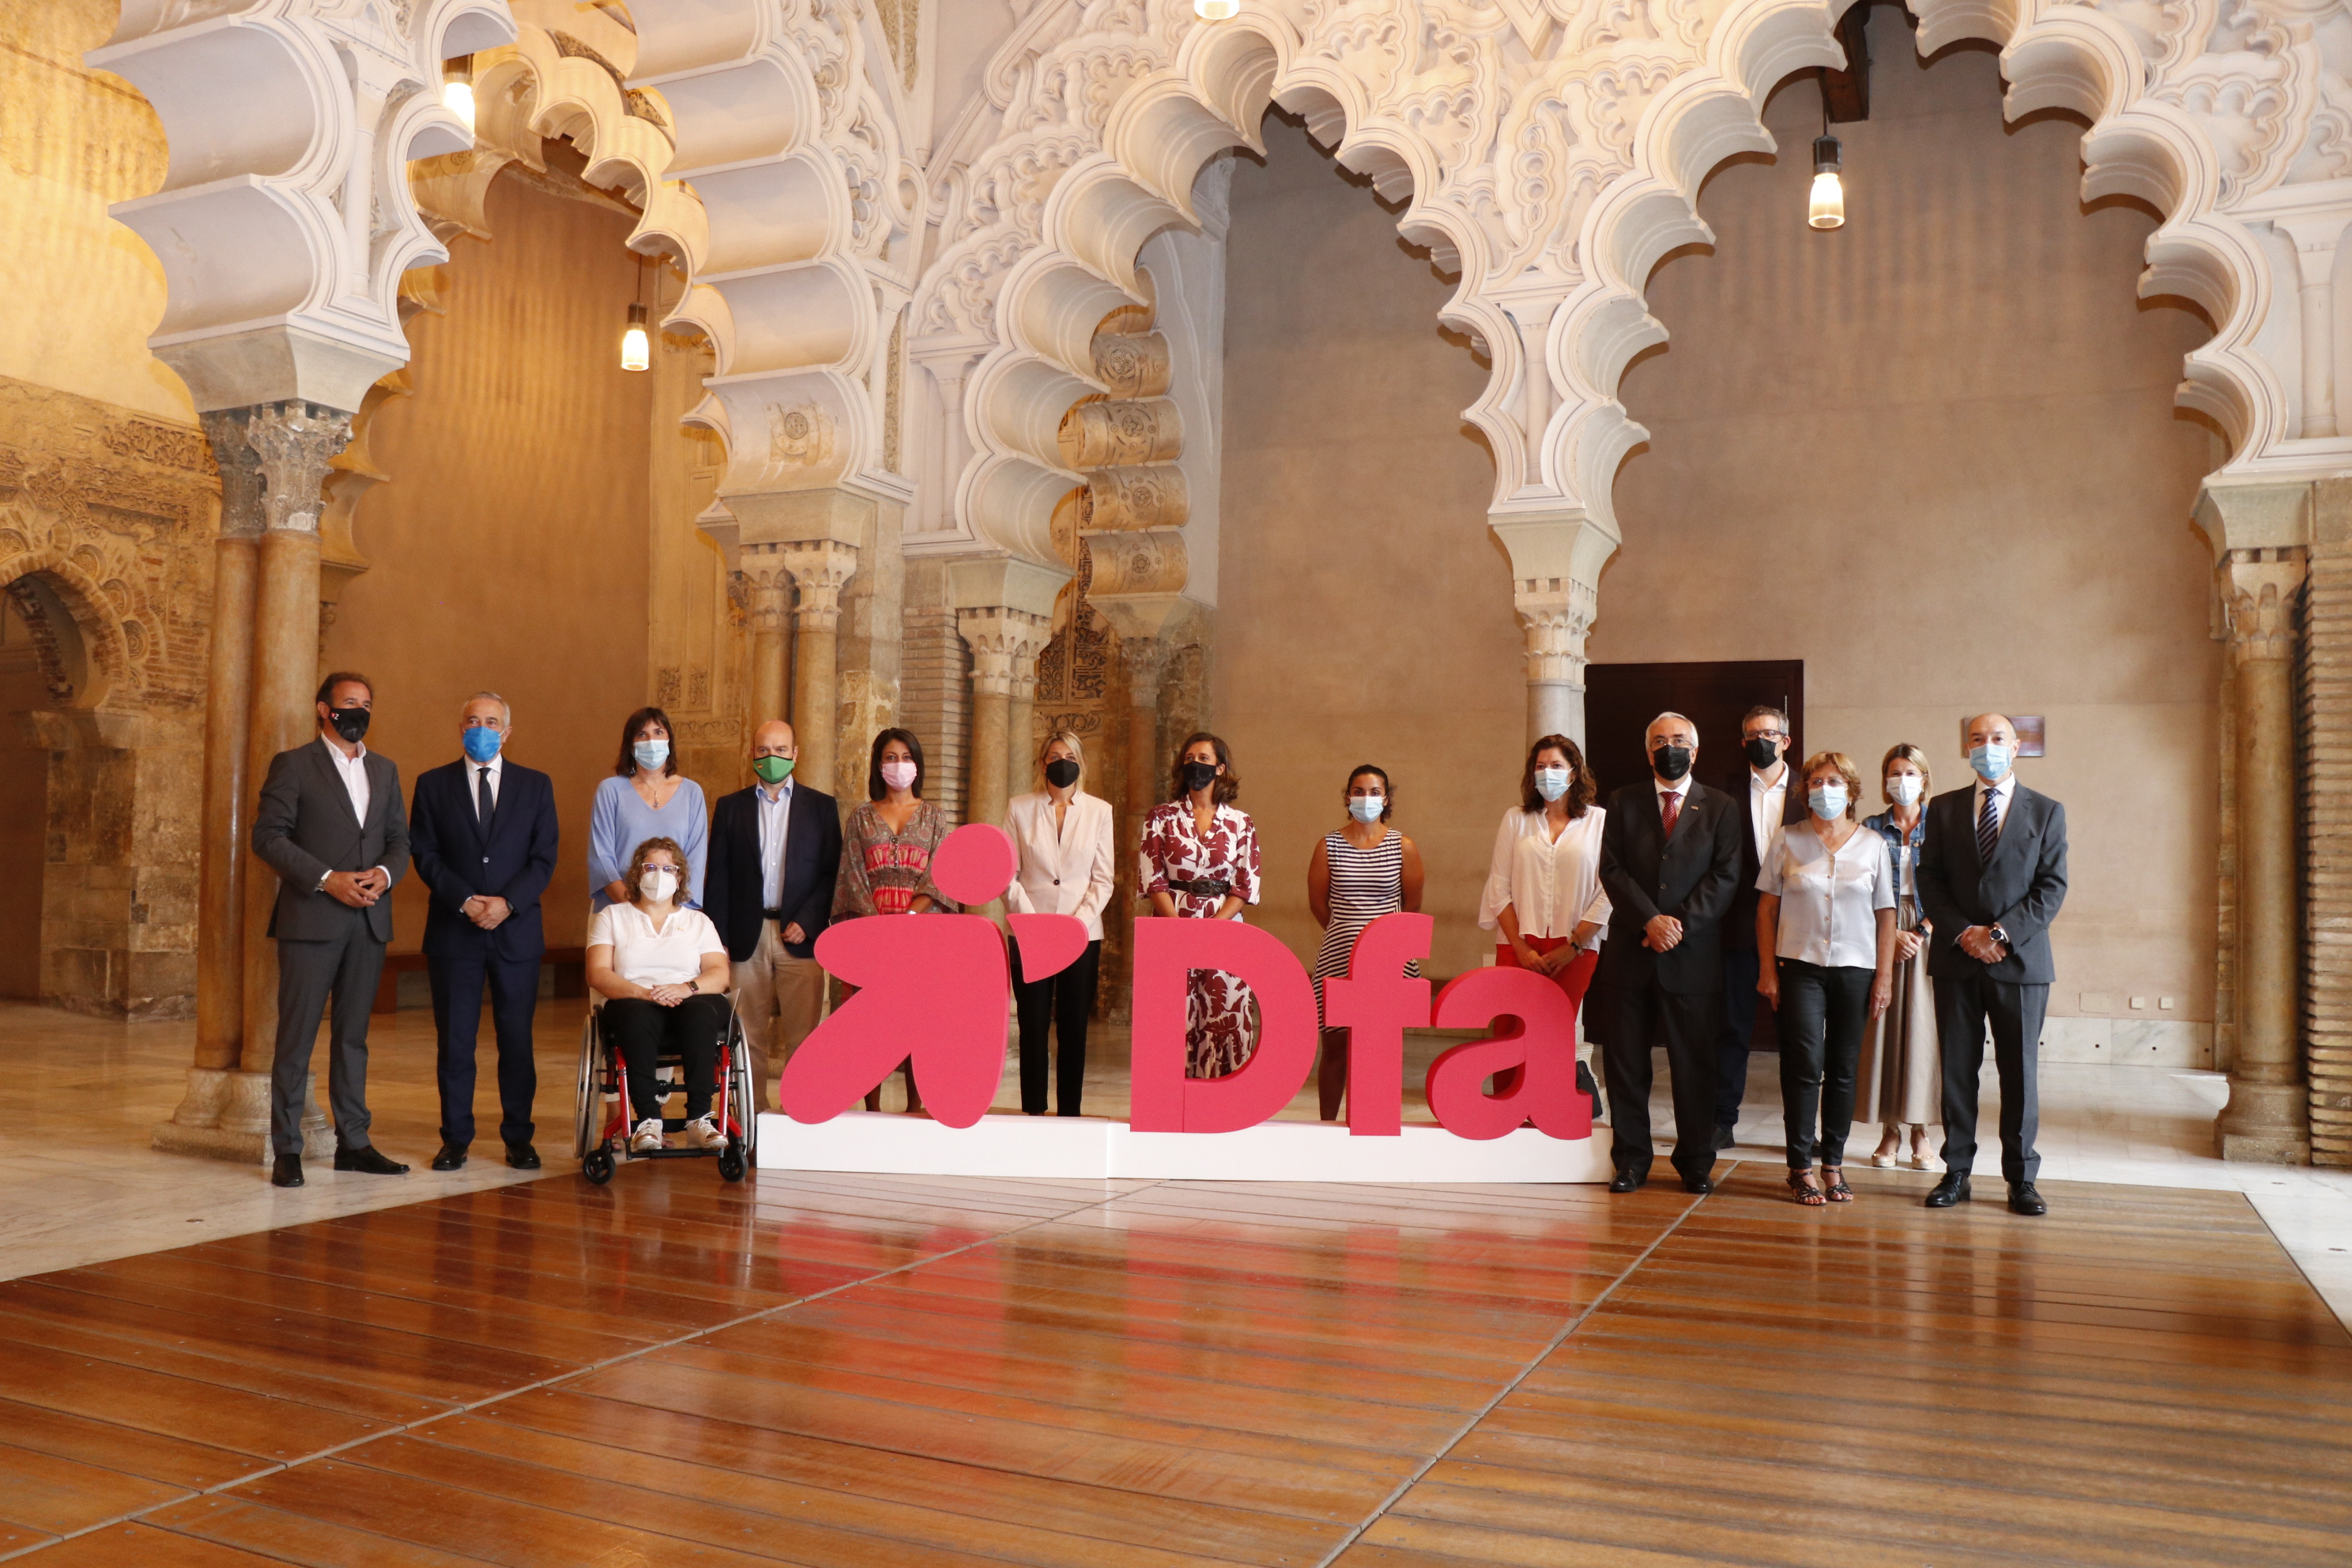 Foto de familia con el nuevo logo de Dfa en el Palacio de la Aljafería